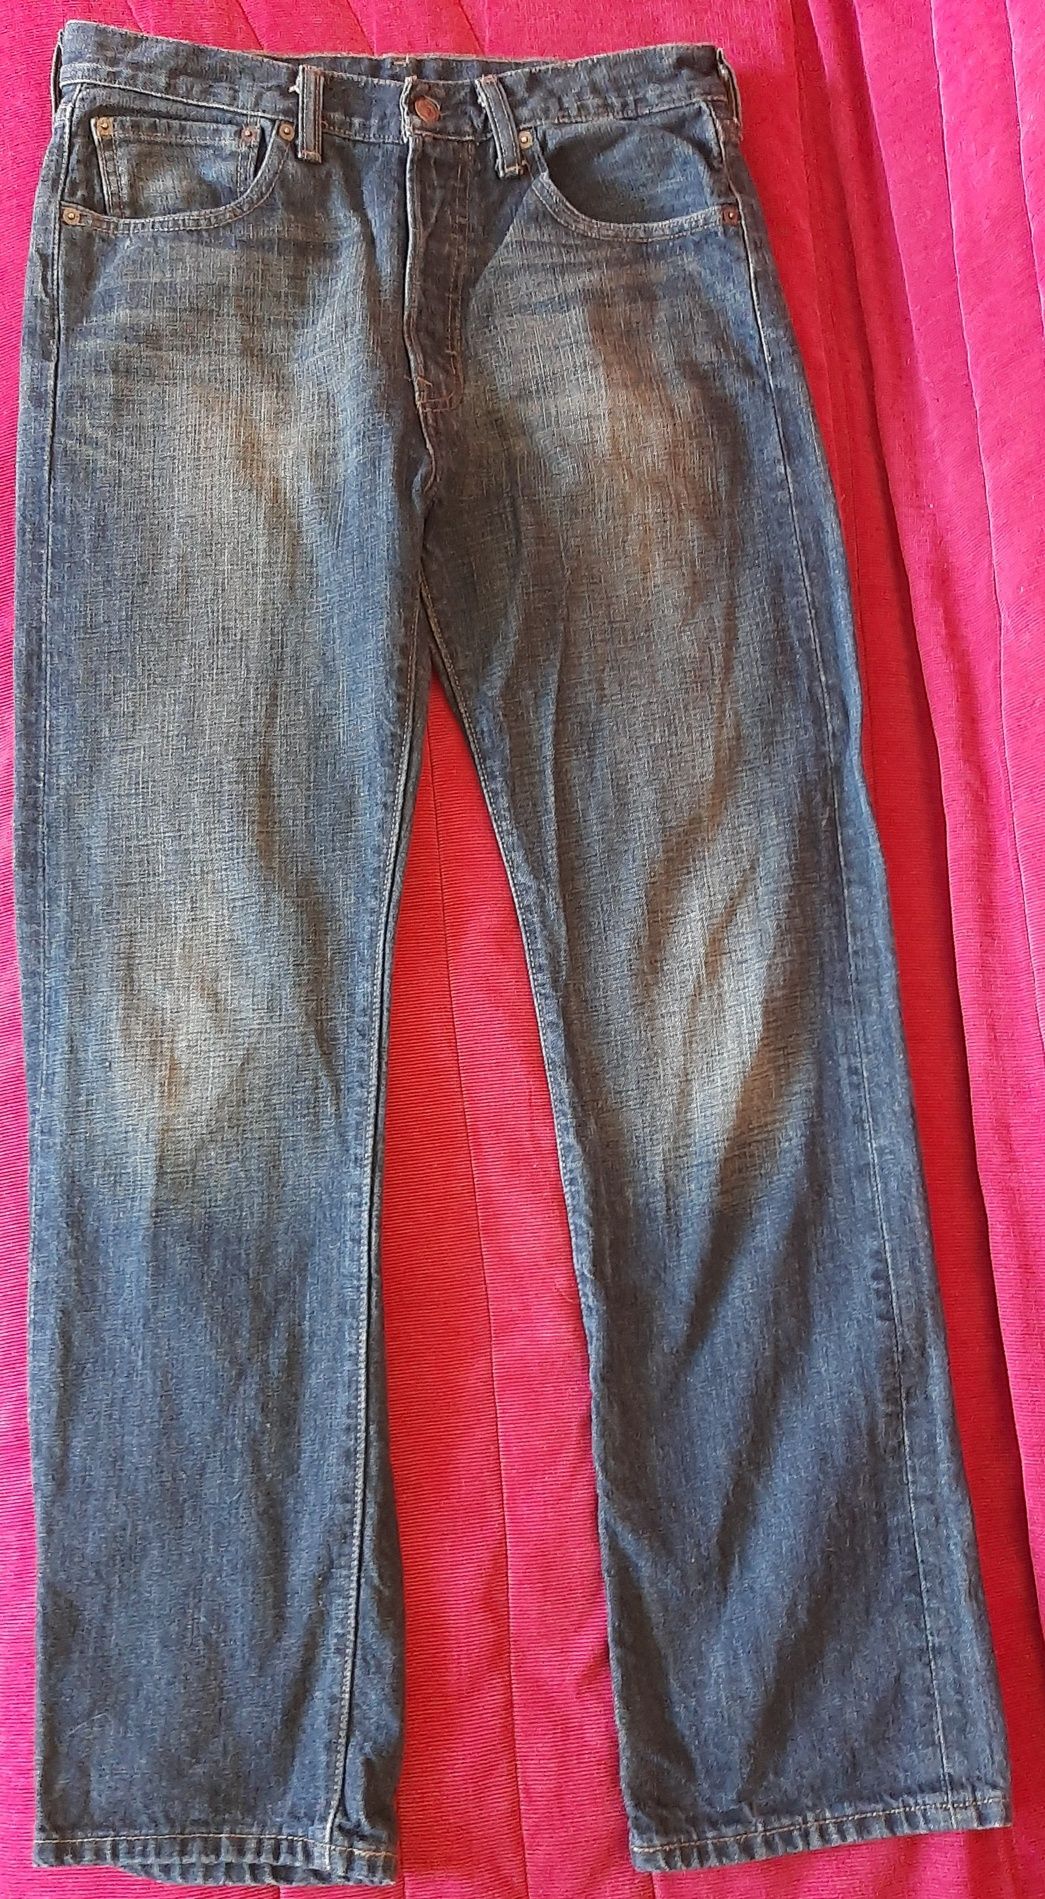 Продам джинсы фирмы "Levis" (Гаити).Модель-501.